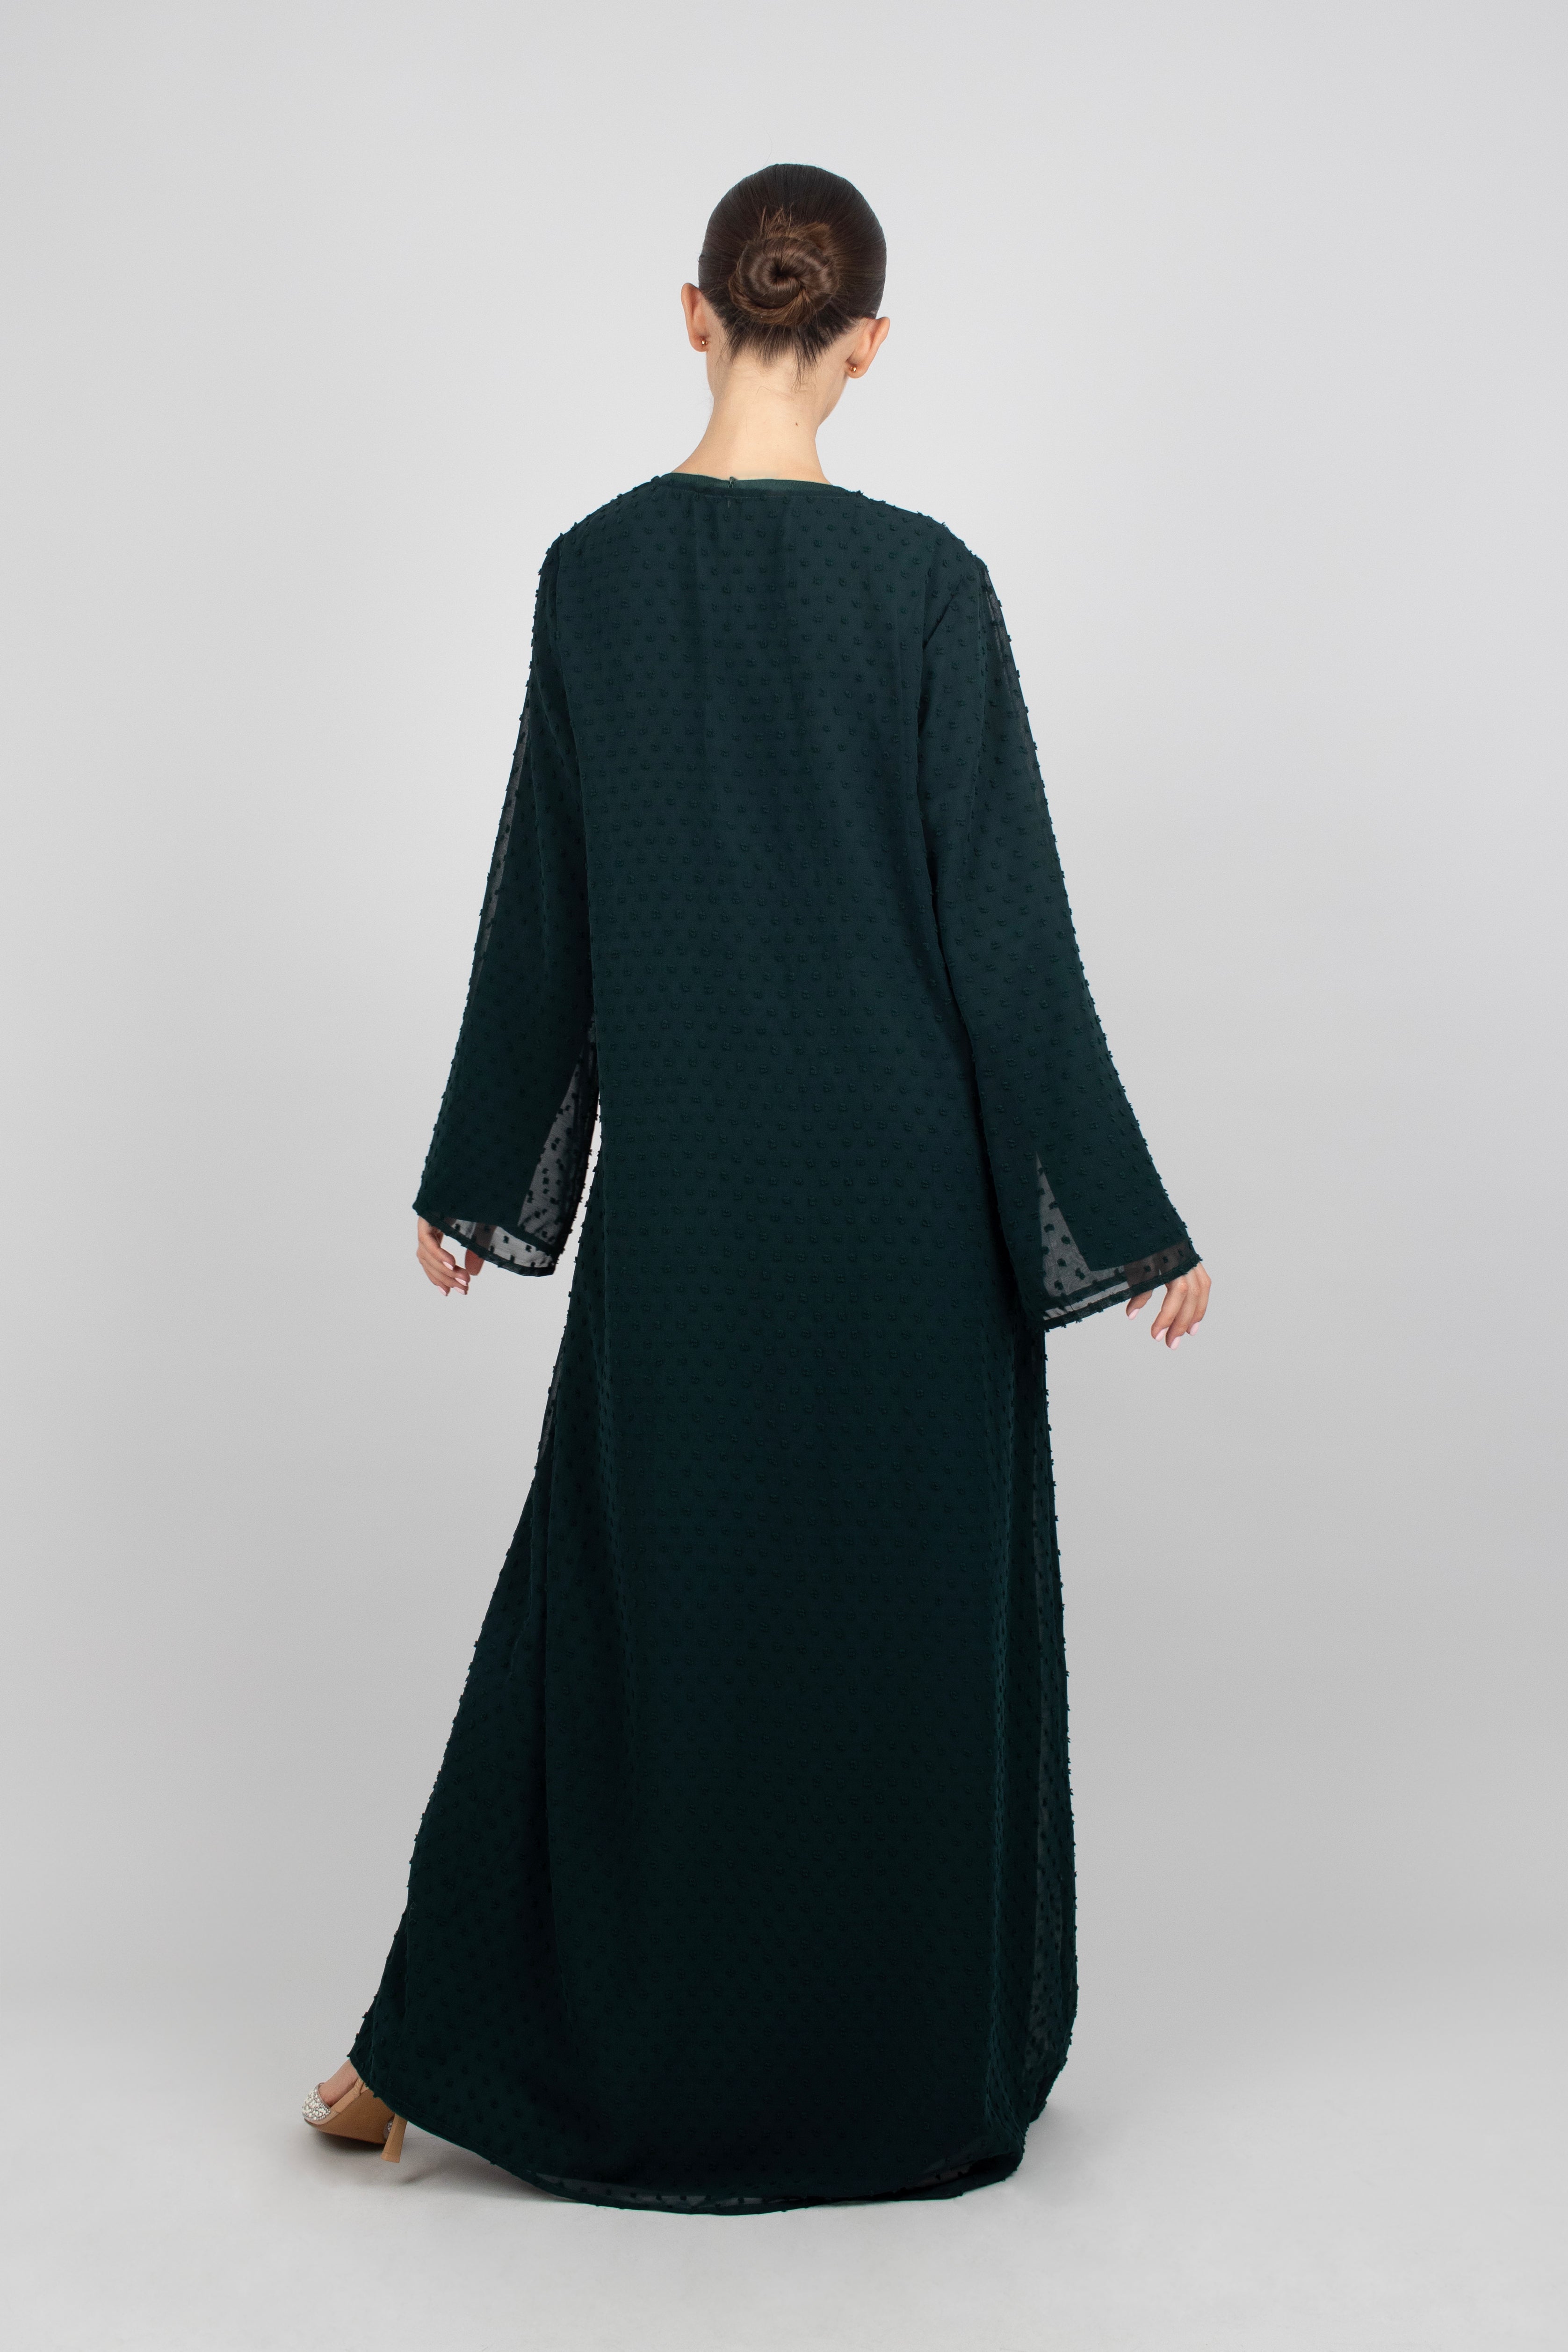 US - Sheer Abaya and Dress Set - Emerald